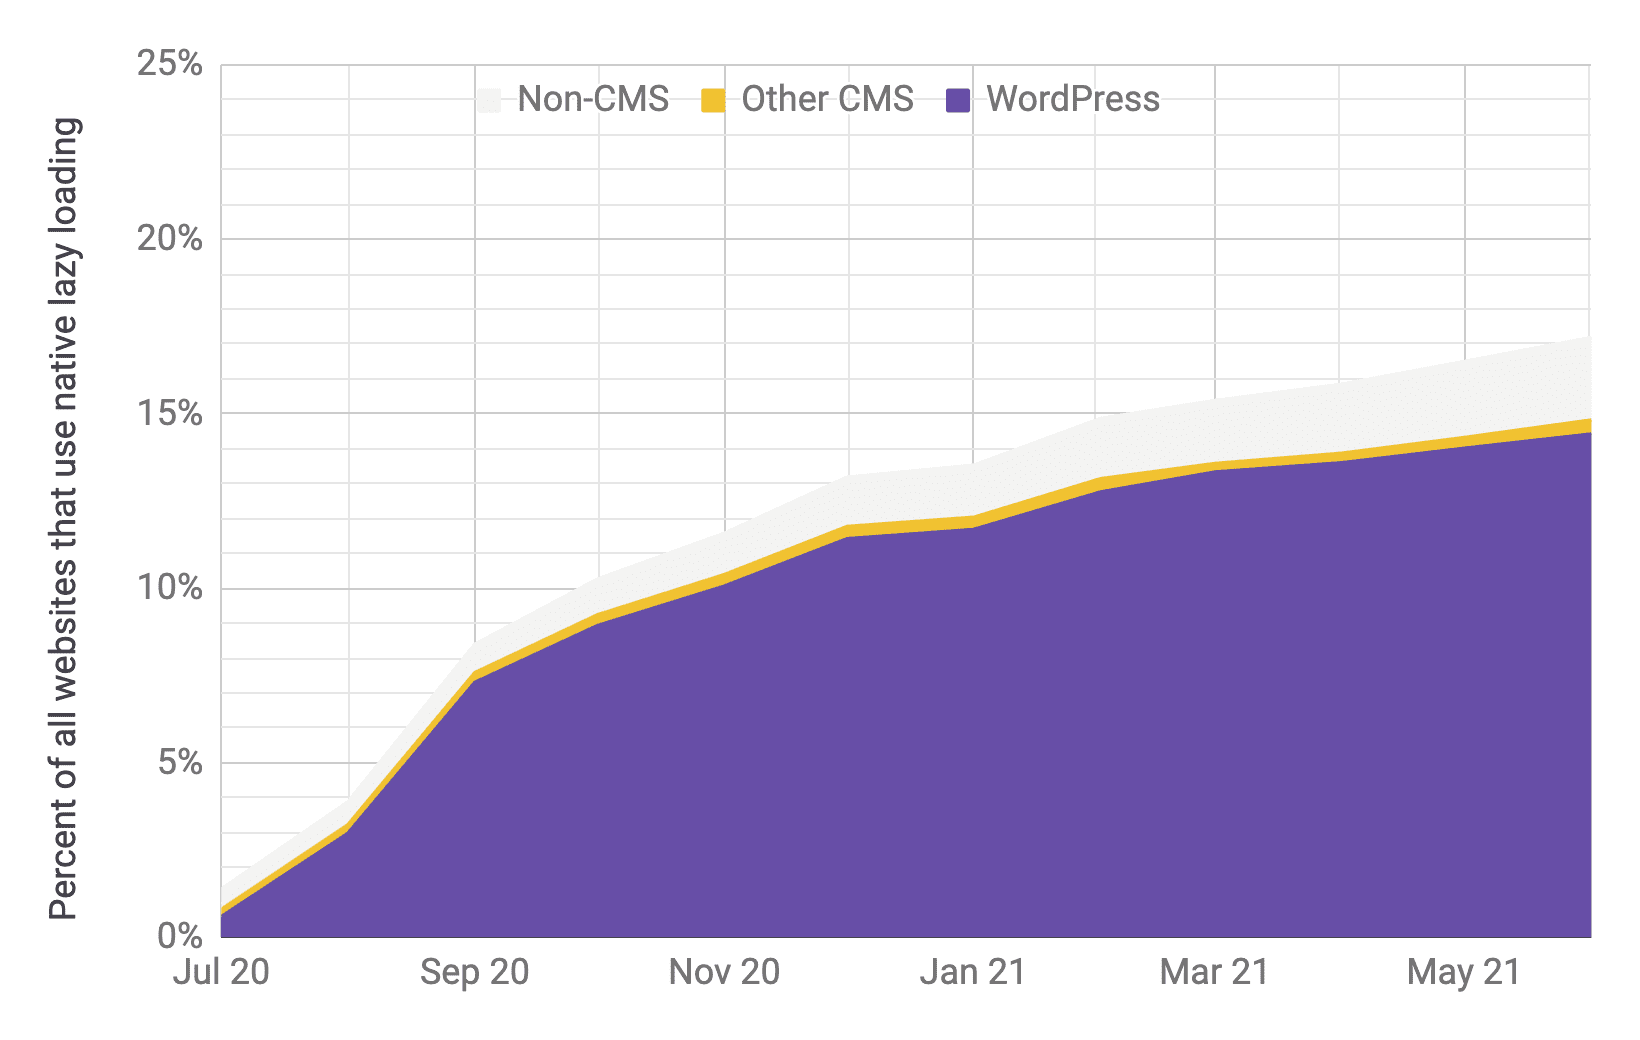 Diagram deret waktu yang menunjukkan adopsi pemuatan lambat dengan WordPress sebagai pemutar utama dibandingkan dengan CMS dan non-CMS lain, dengan proporsi yang serupa dengan diagram sebelumnya. Total adopsi terbukti meningkat pesat dari 1% menjadi 17% dari Juli 2020 hingga Juni 2021.